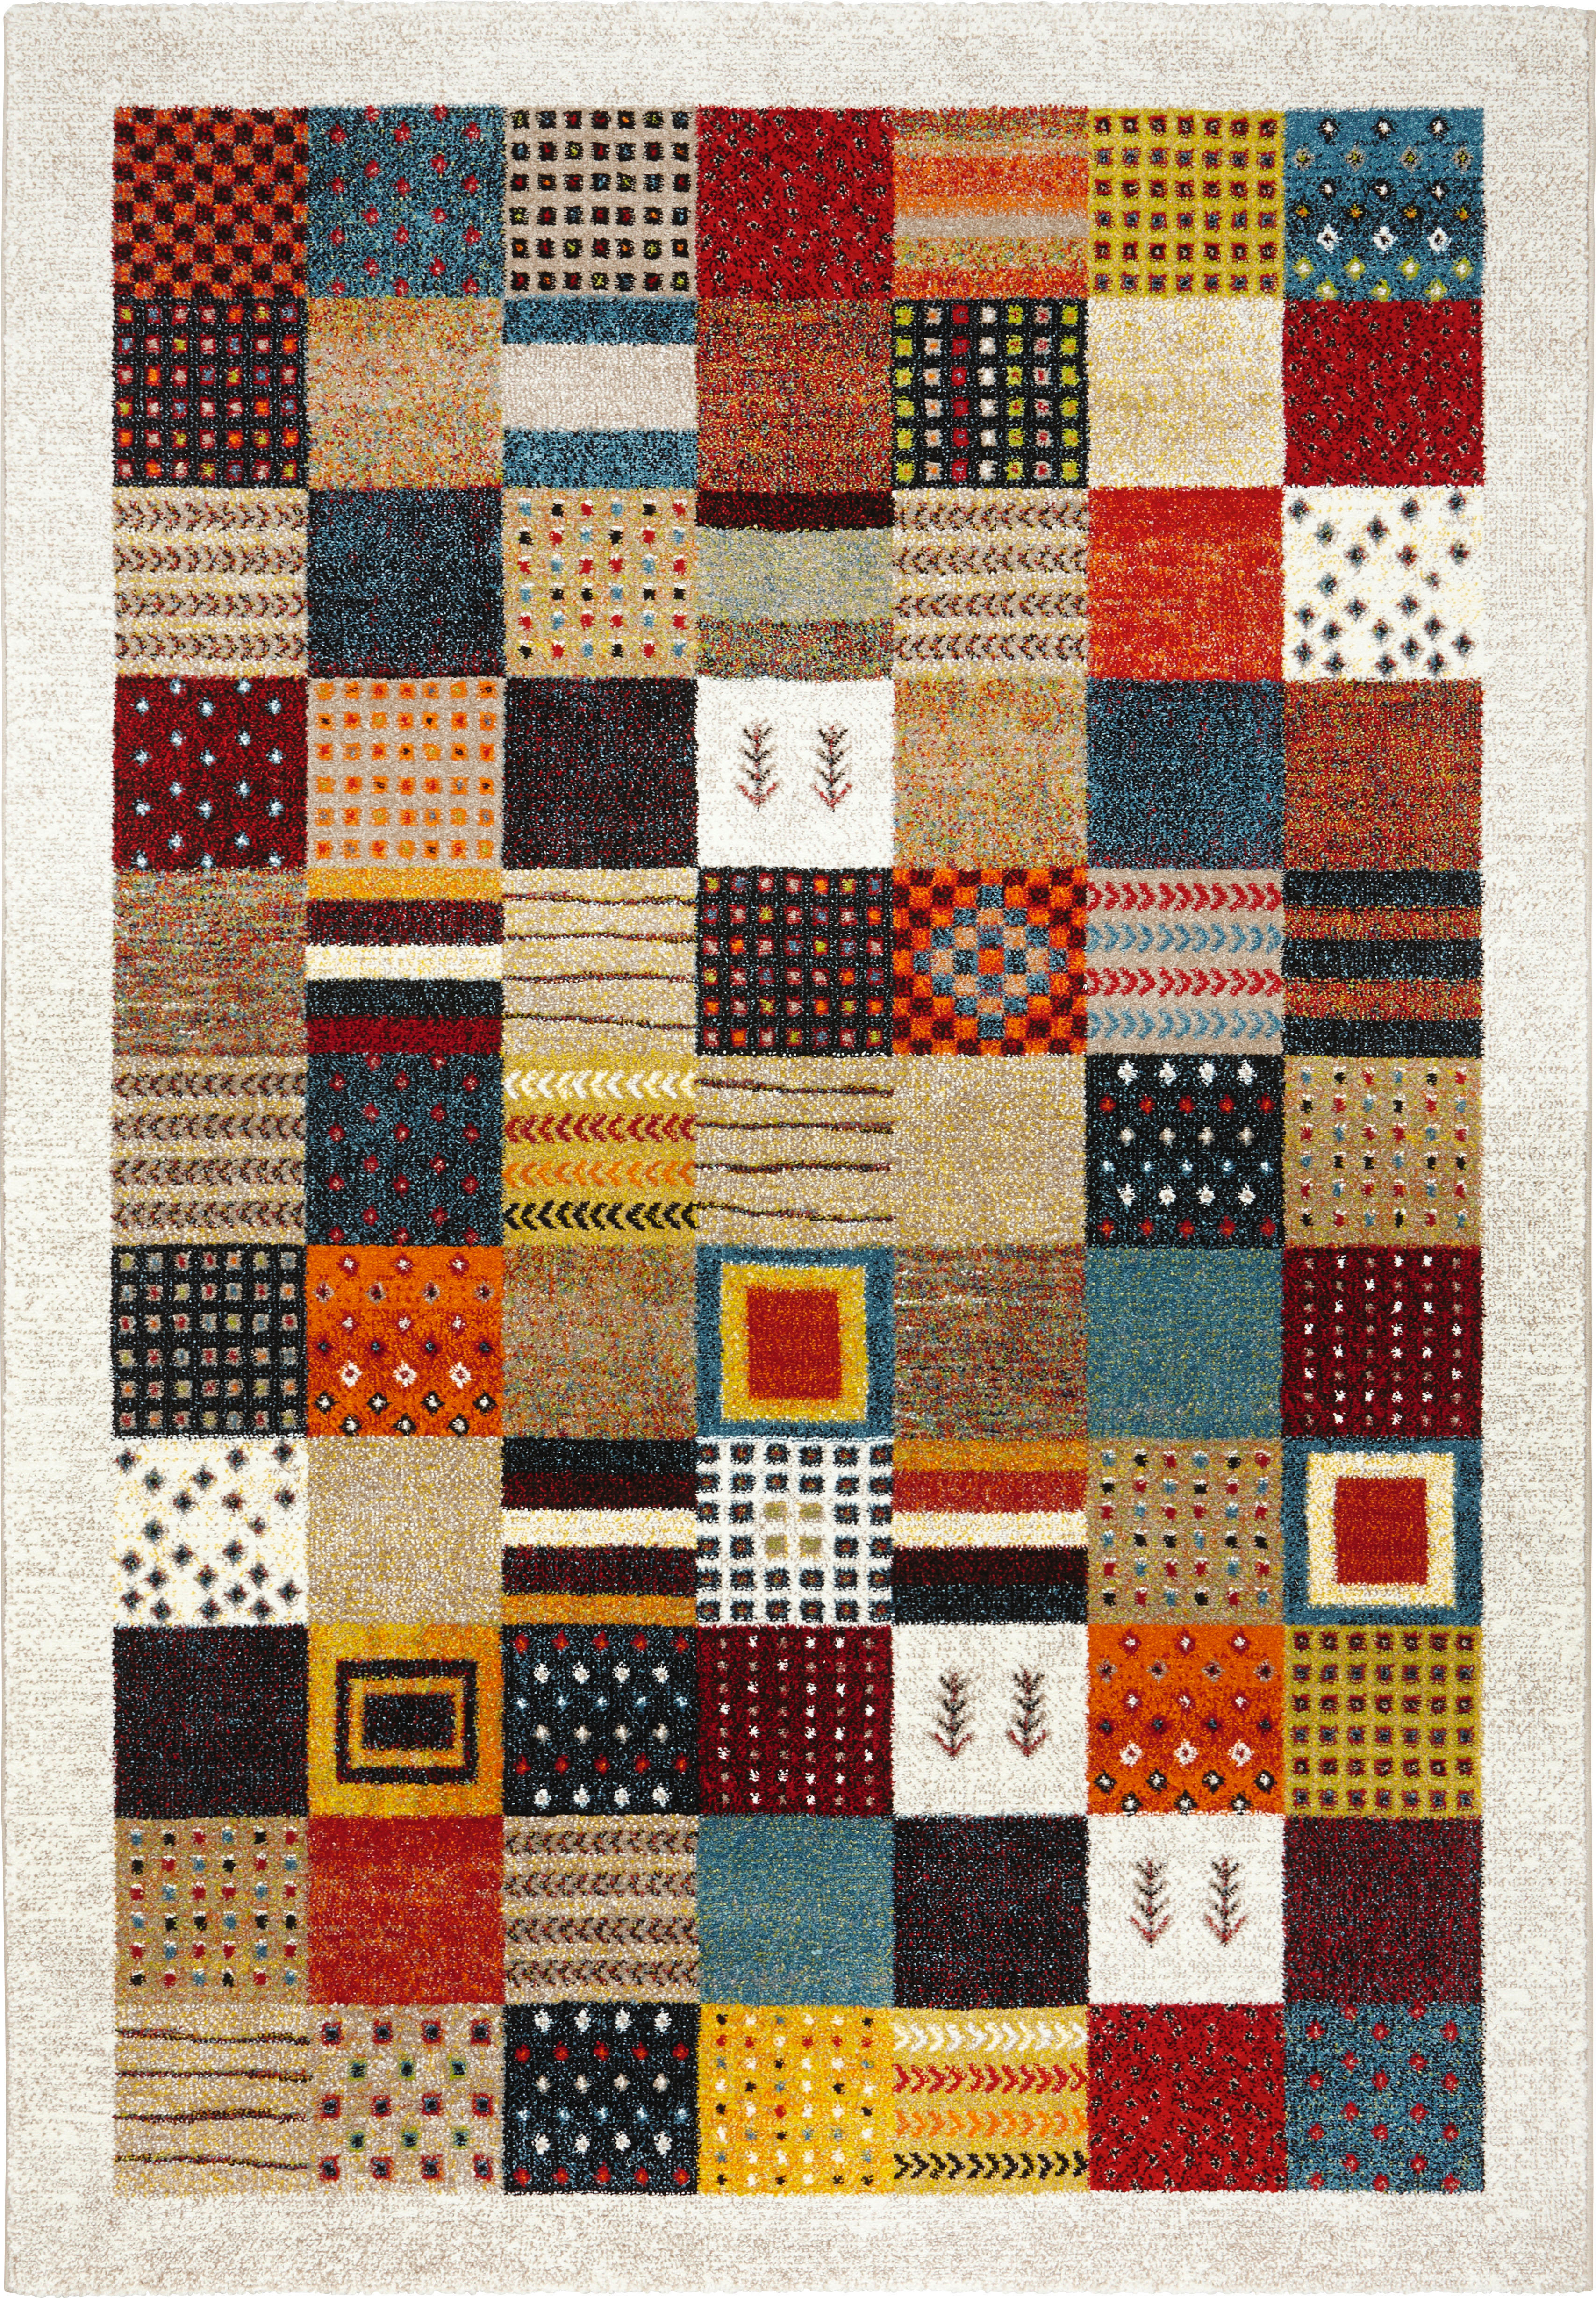 COVOR ȚESUT Cassandra  - multicolor, Lifestyle, textil (67/130cm) - Novel